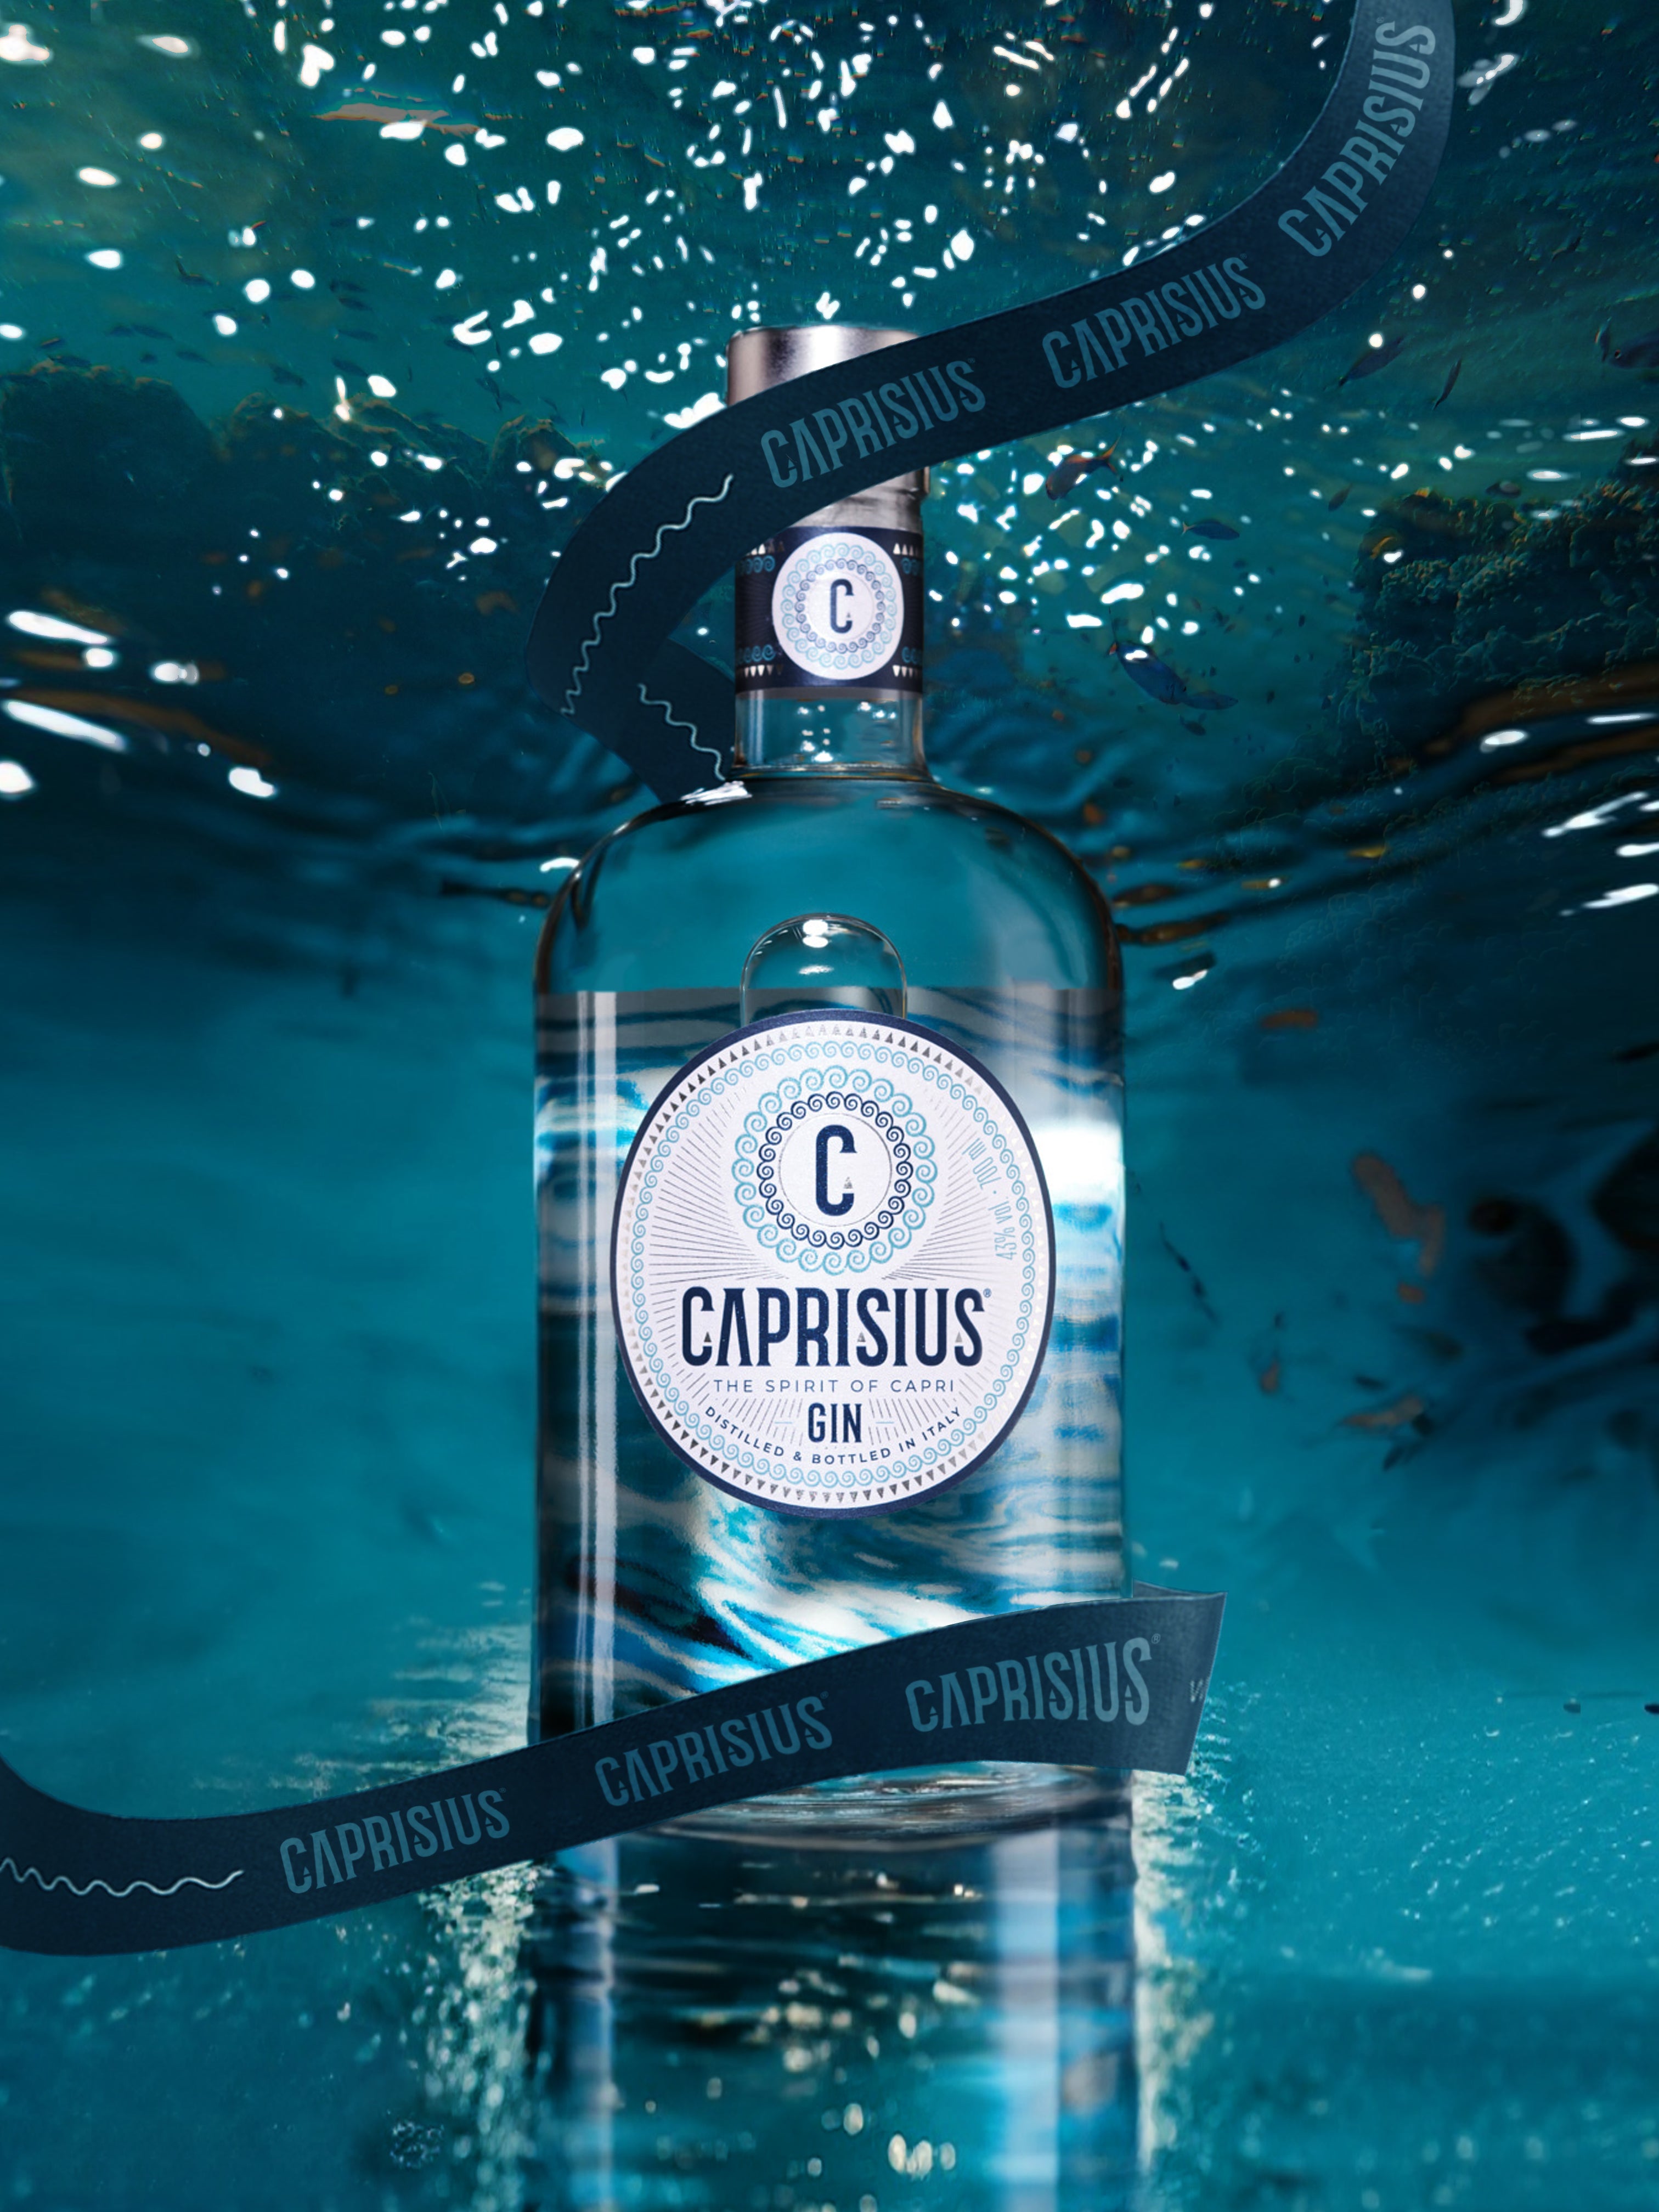 Caprisius gin